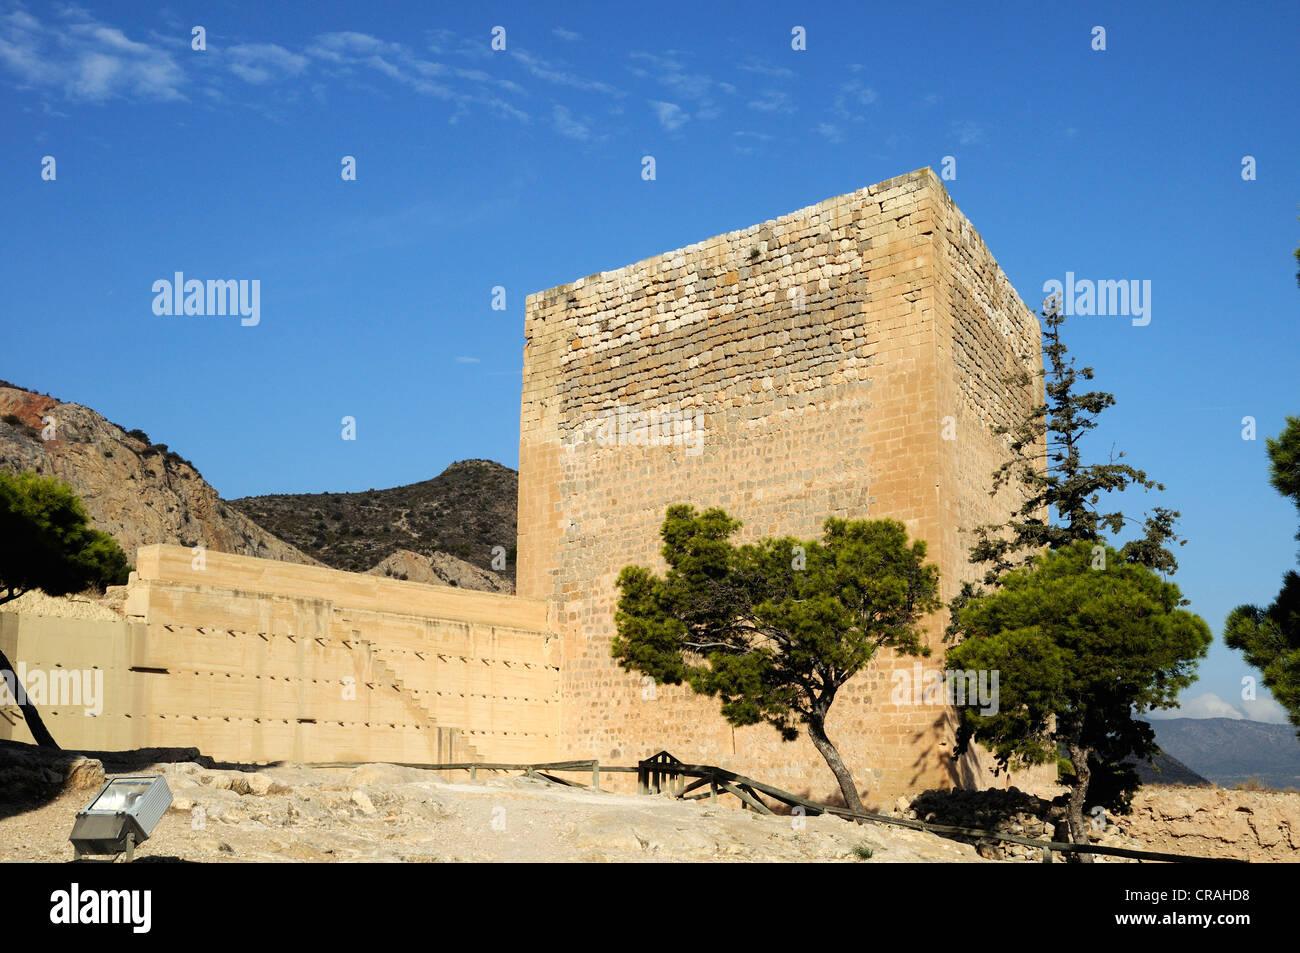 Las ruinas del castillo de La Mola, la fortaleza de la época musulmana, Novelda, Costa Blanca, España, Europa Foto de stock